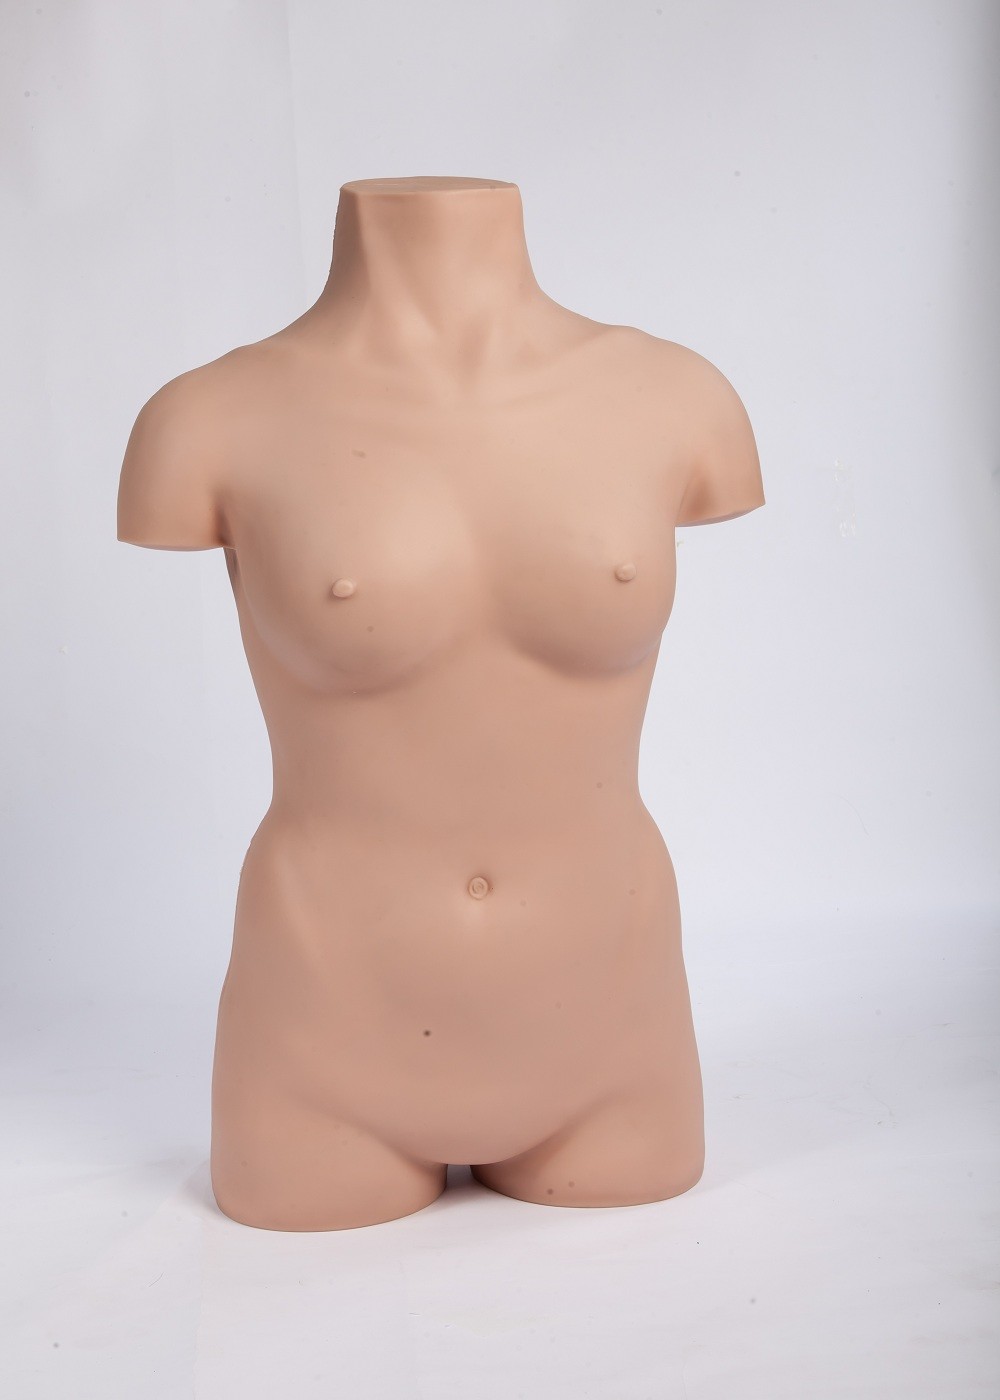 Modelos de treinamento cirúrgicos da operação asséptica realística do corpo fêmea para a educação